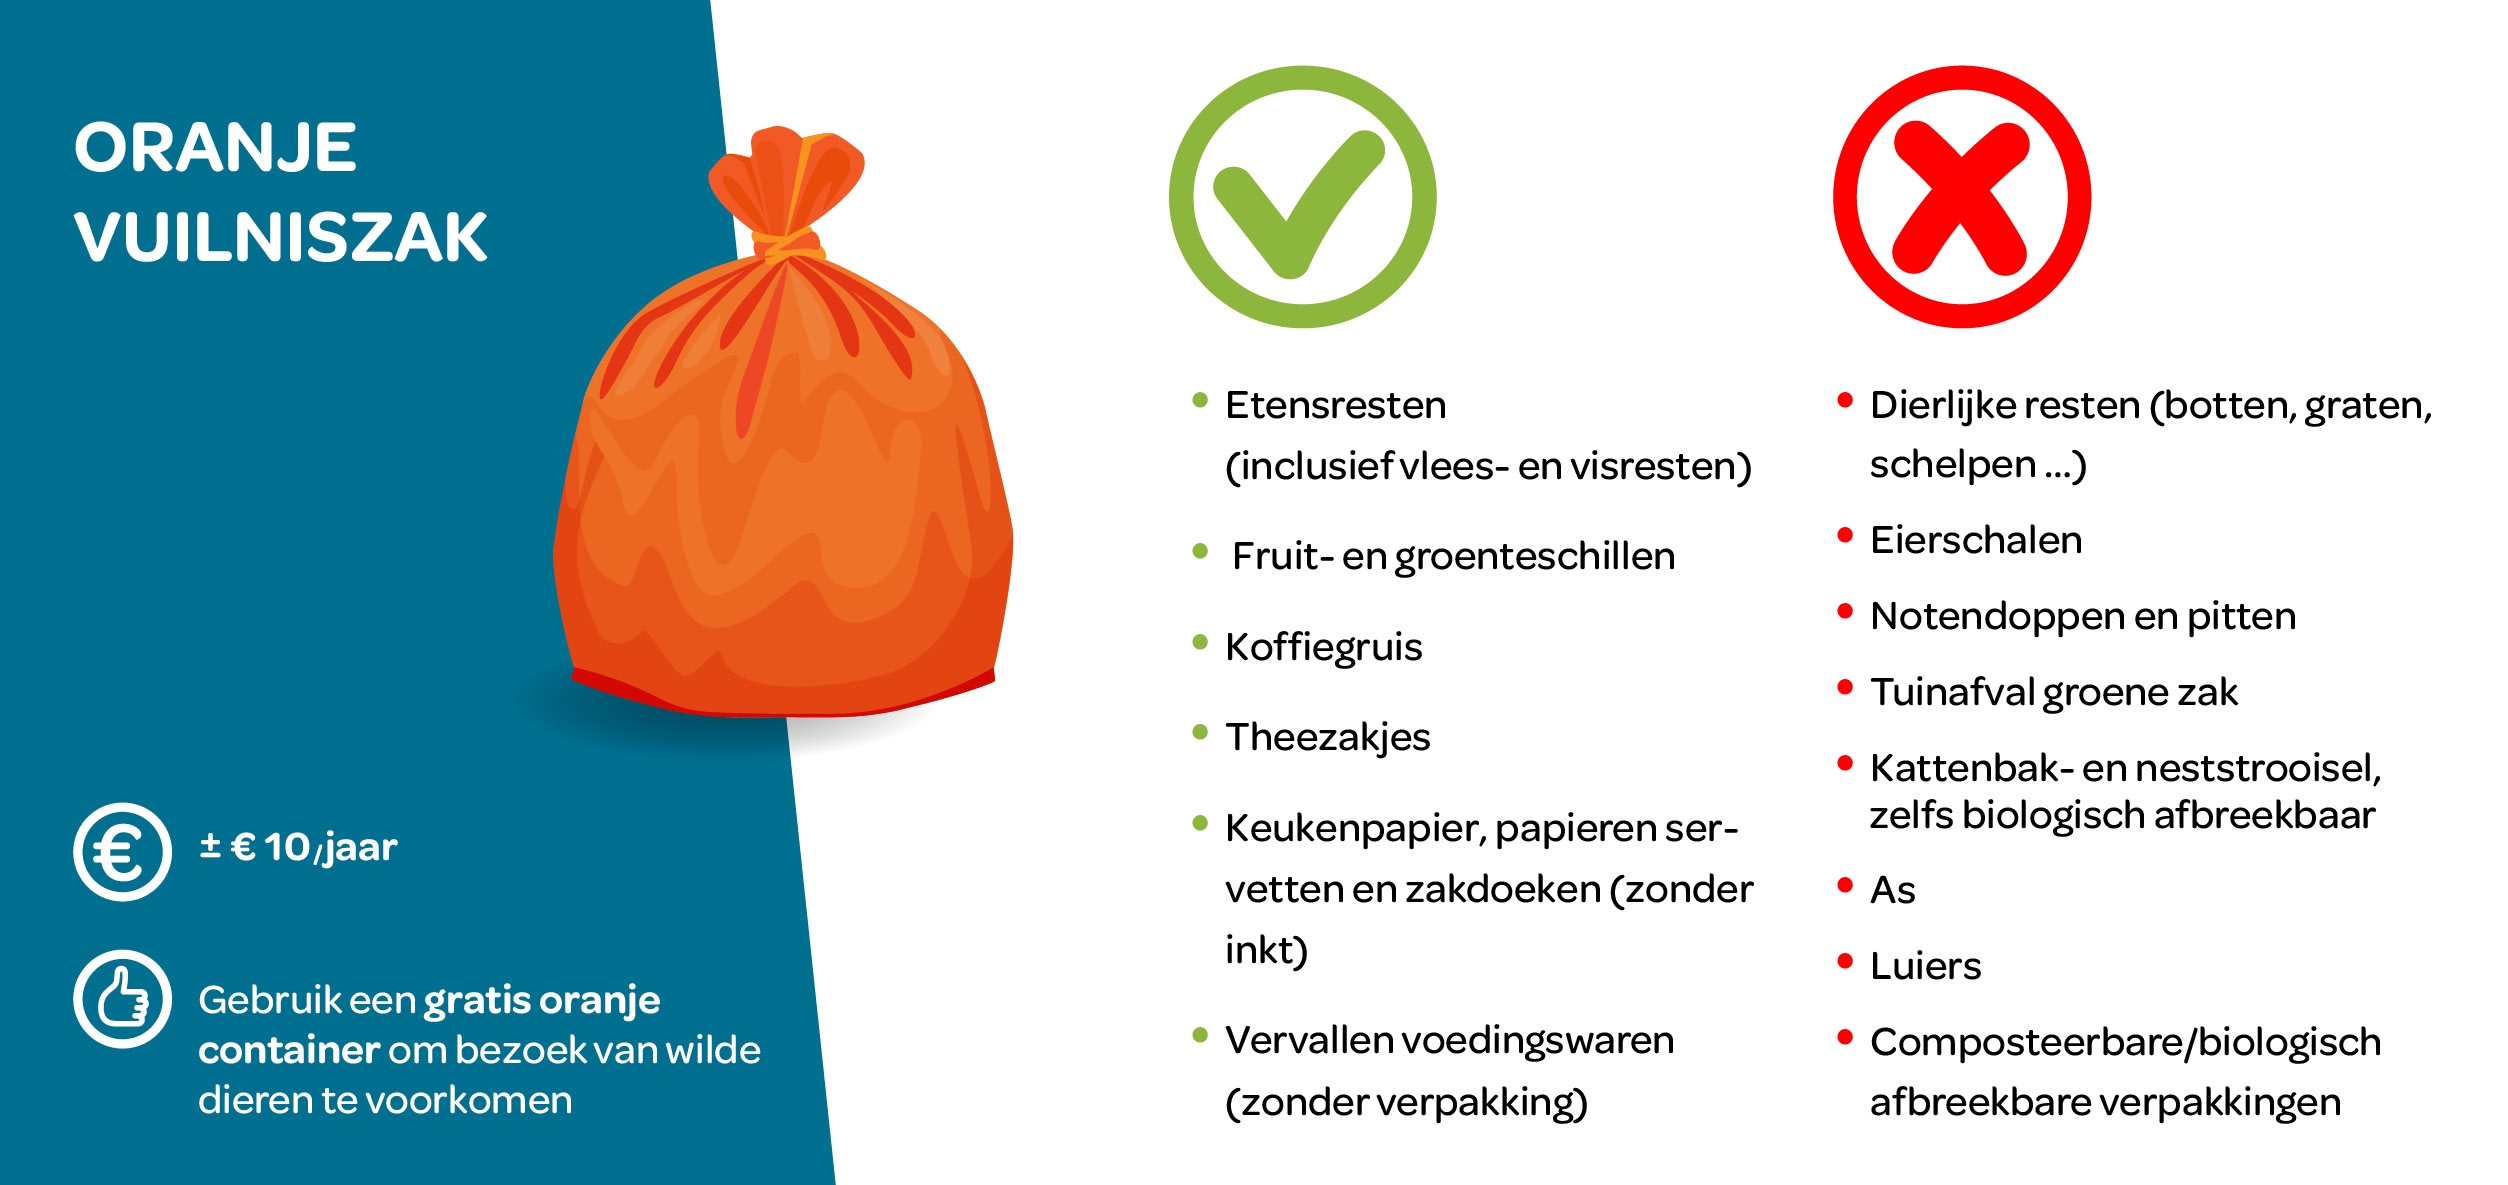 Een tekening van een oranje vuilniszak, een opsomming van de voordelen en een lijst van toegestaan en niet toegestaan voedselafval.